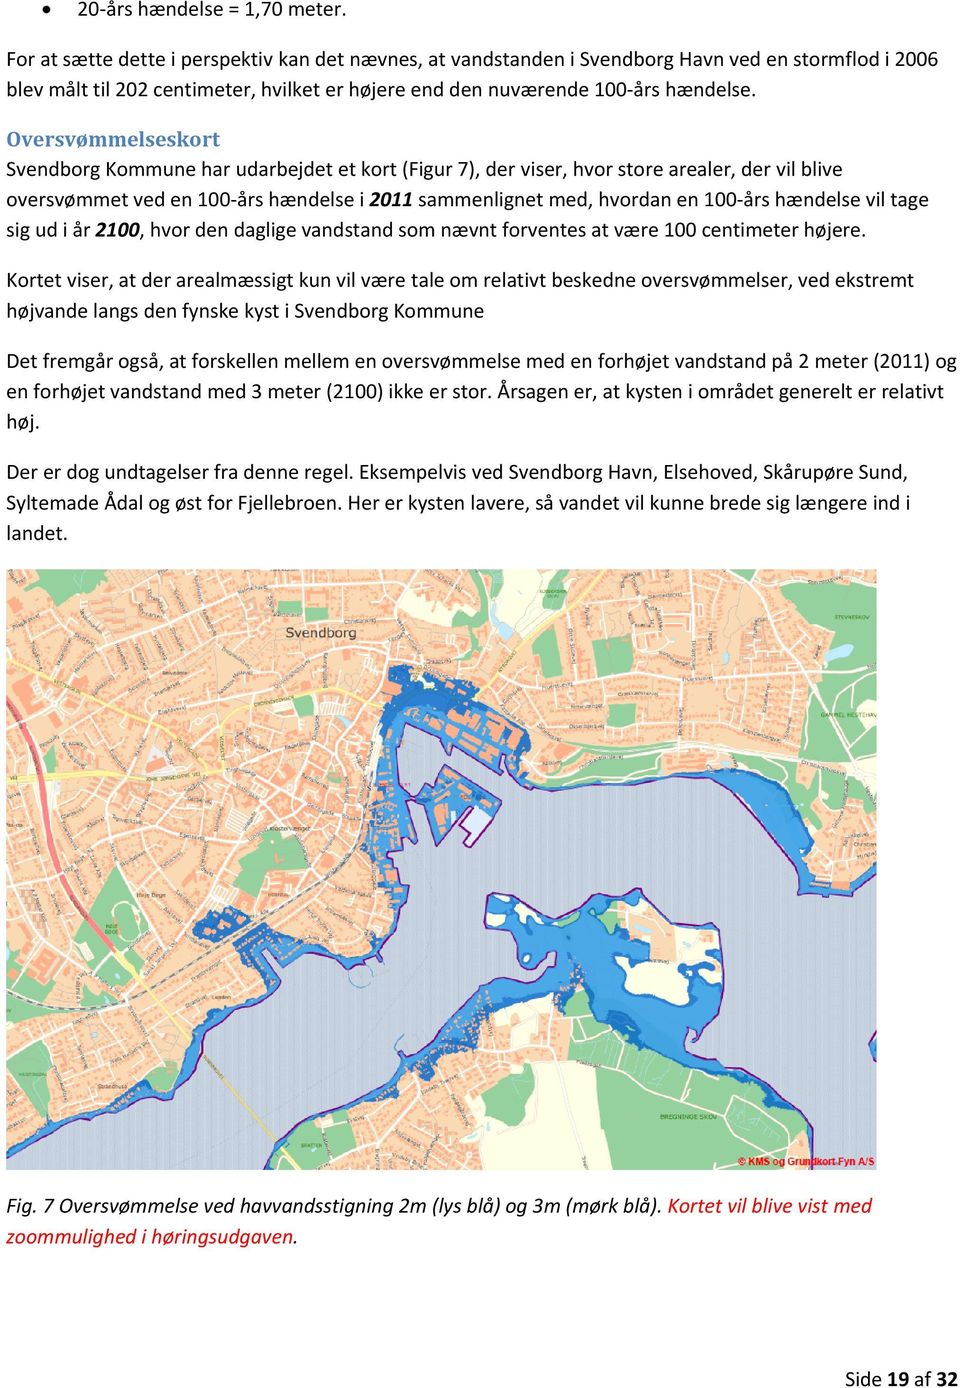 Oversvømmelseskort Svendborg Kommune har udarbejdet et kort (Figur 7), der viser, hvor store arealer, der vil blive oversvømmet ved en 100-års hændelse i 2011 sammenlignet med, hvordan en 100-års